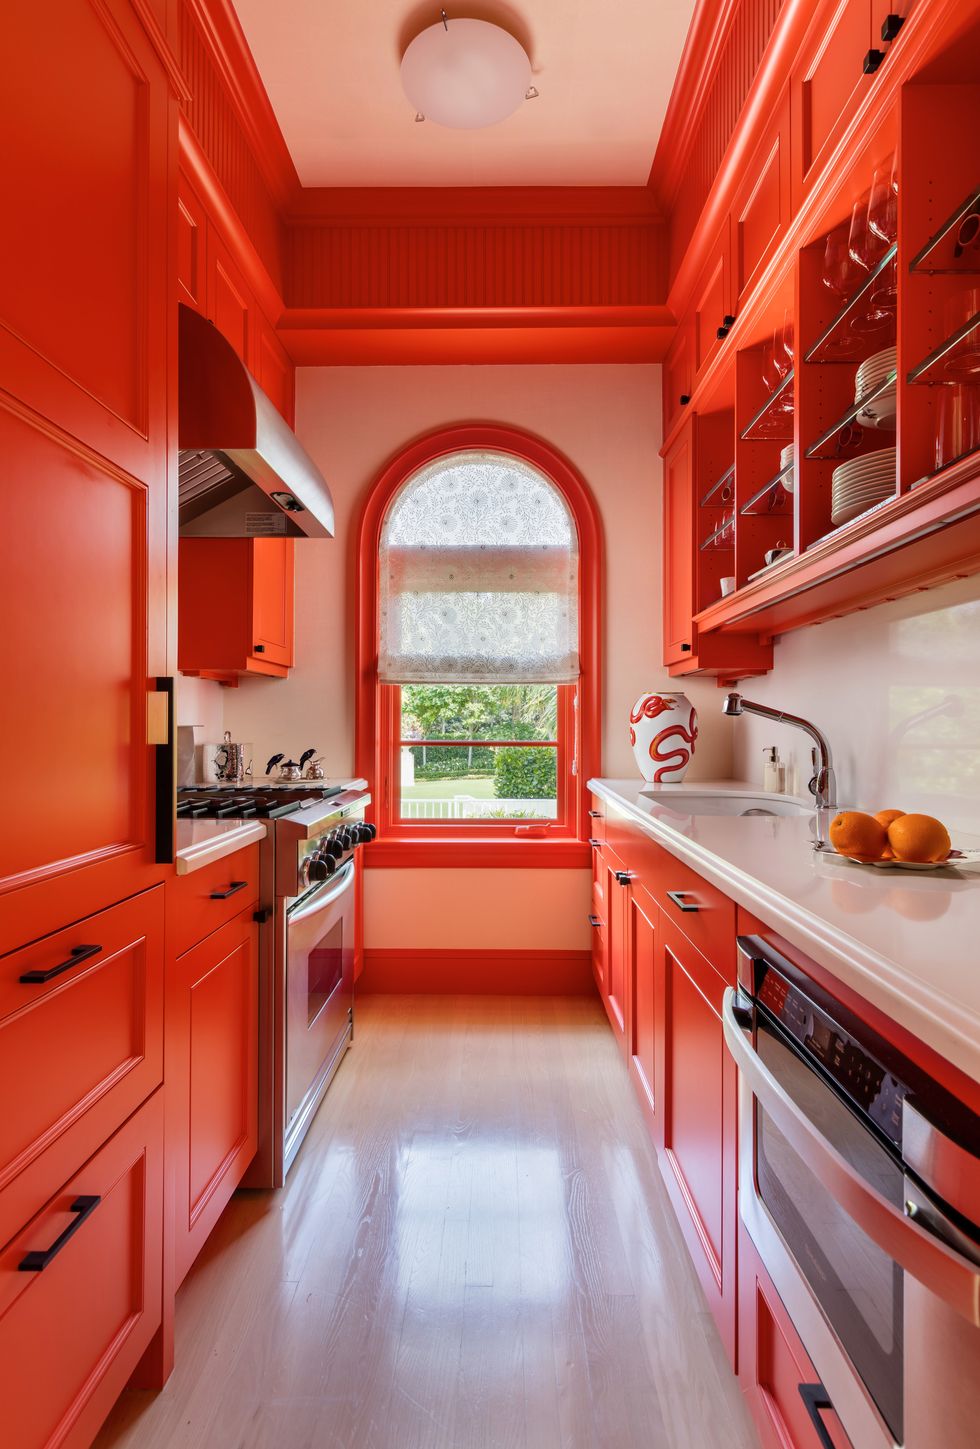 9 Best Orange Paint Colors for a Vibrant Home